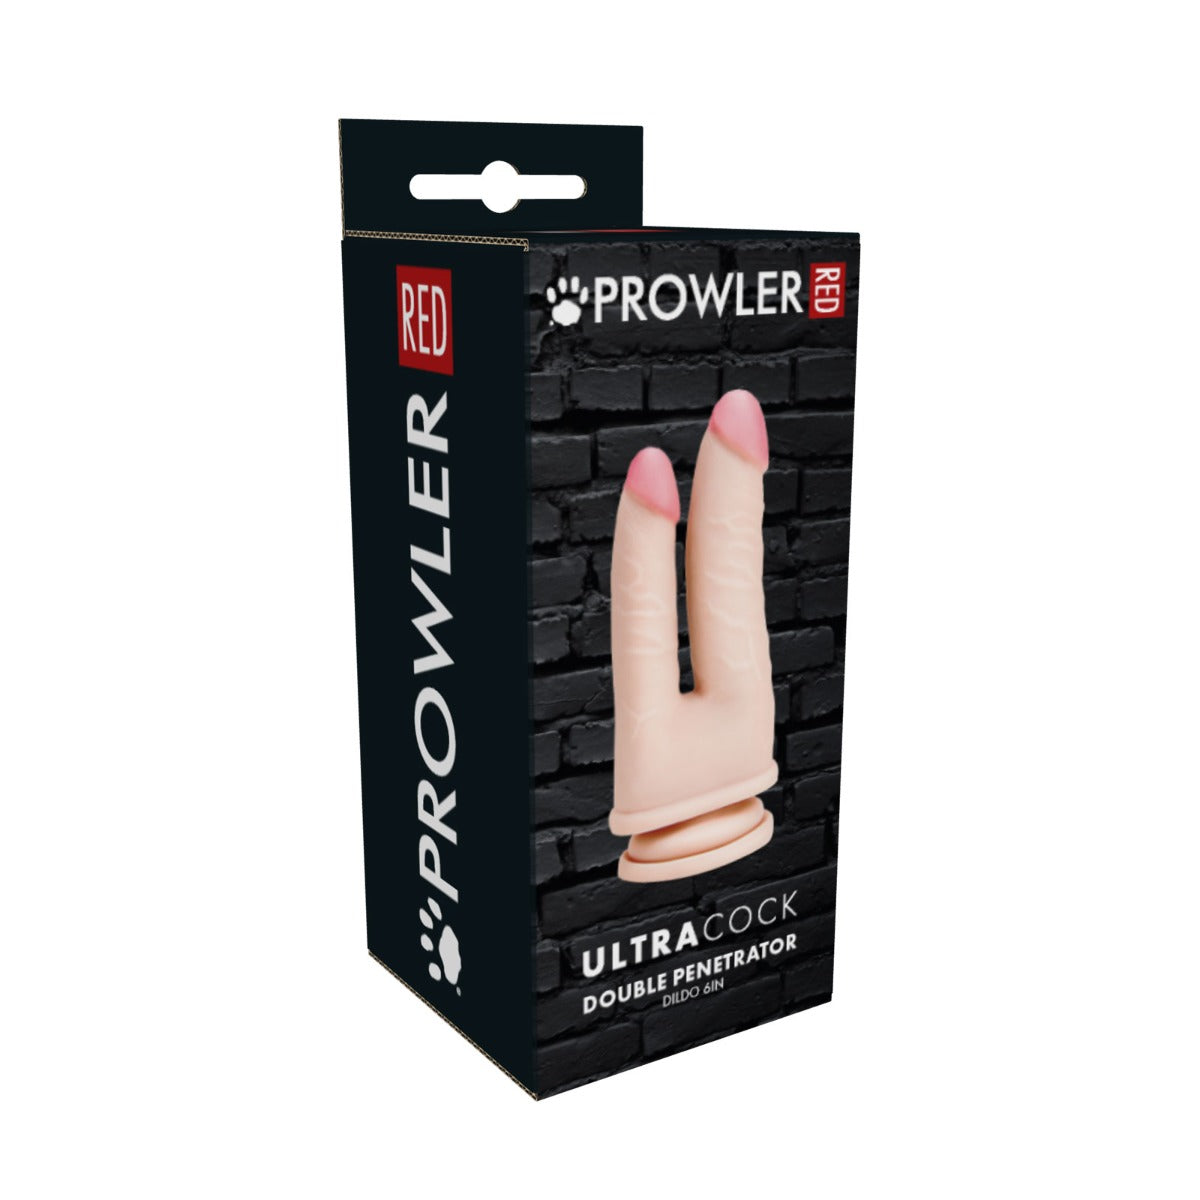 Prowler RED Ultra Cock Double Penetrator Dildo (6)"